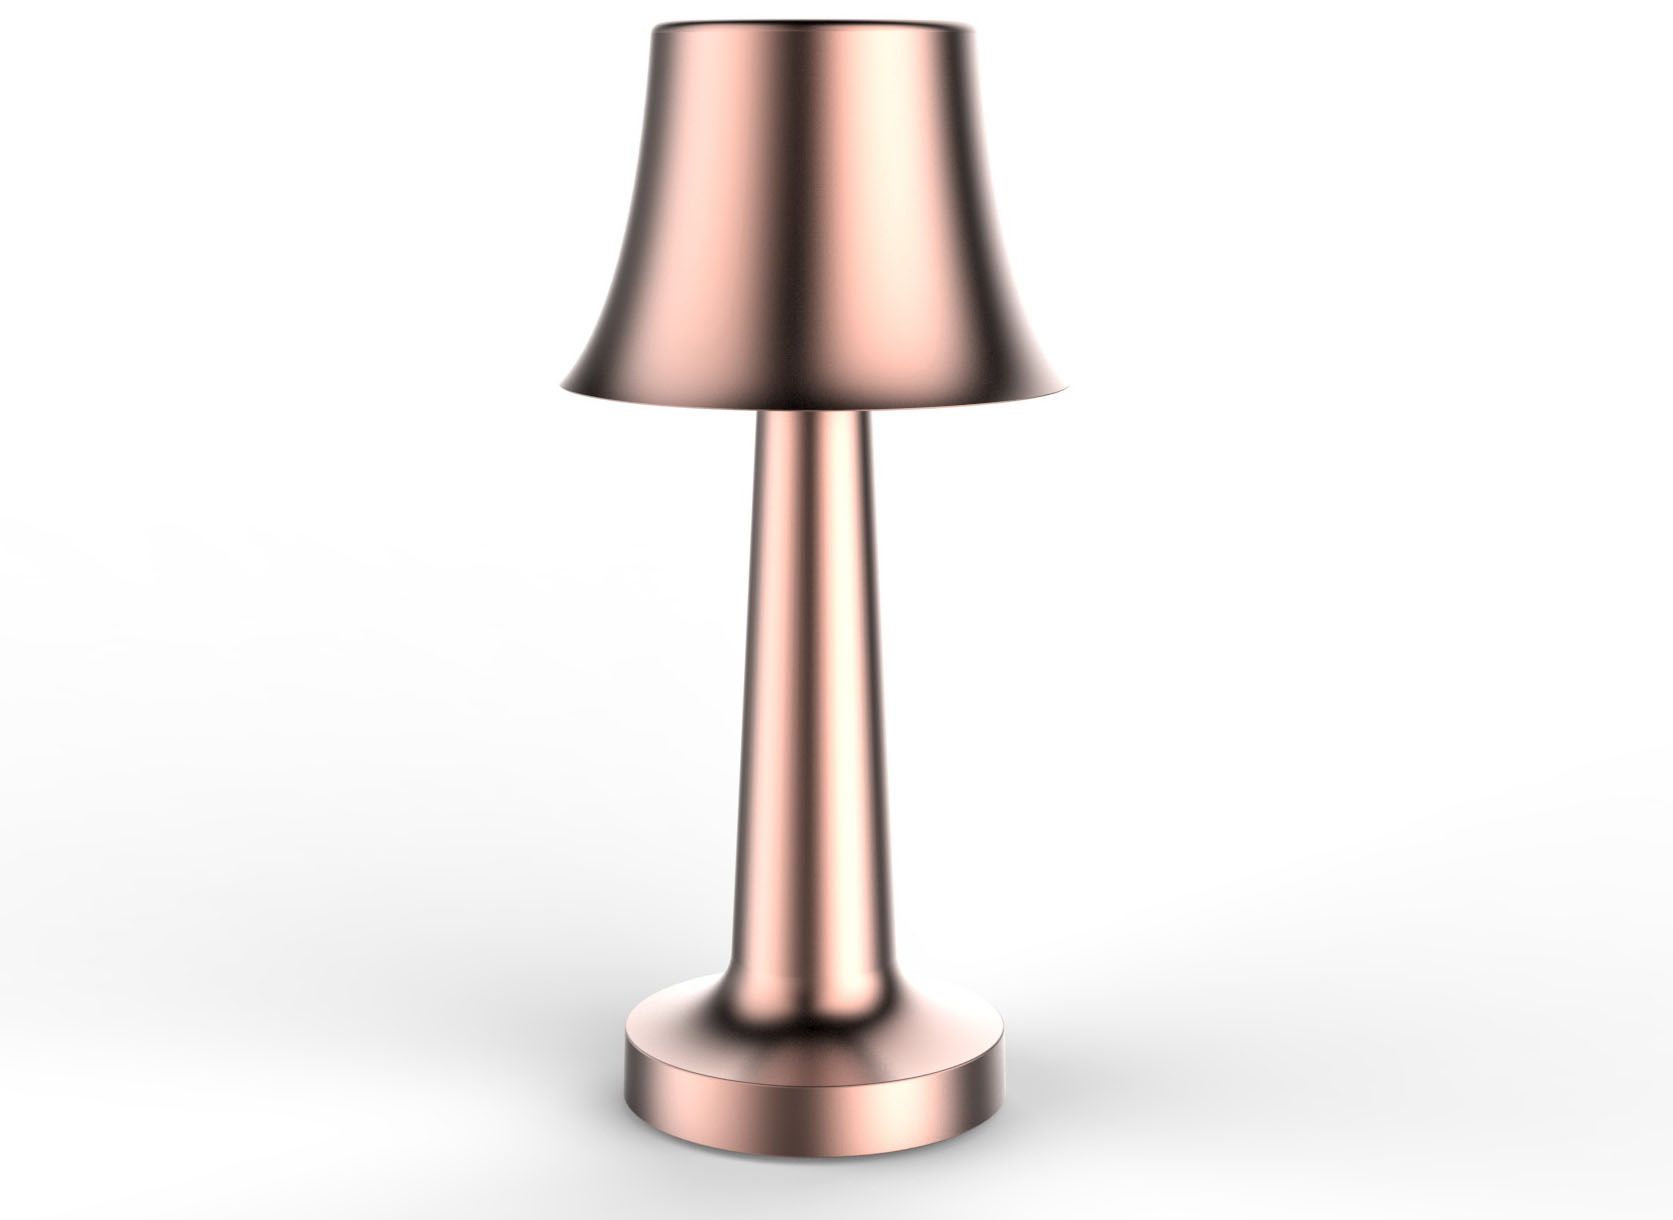 Светодиодная лампа в стиле ретро/медная настольная лампа для деревенского декора - ЭТЛЭД-53Д. Светодиодная лампа в стиле ретро/медная настольная лампа для деревенского декора